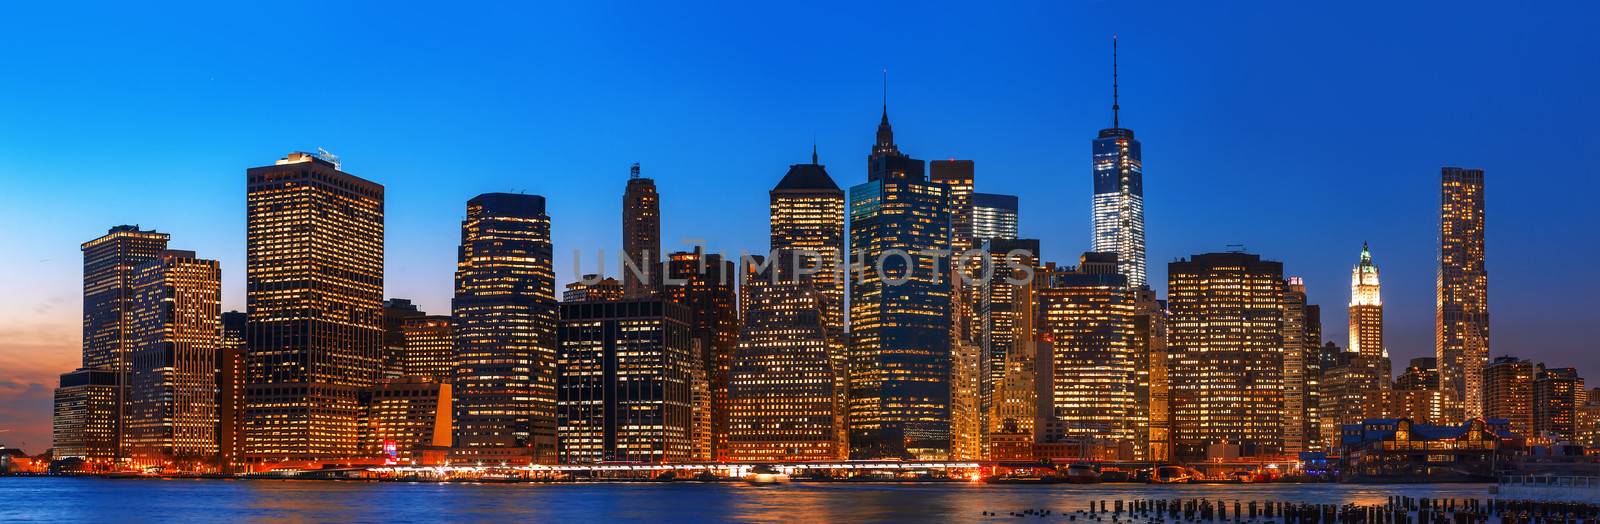  Night New York City skyline panorama by palinchak